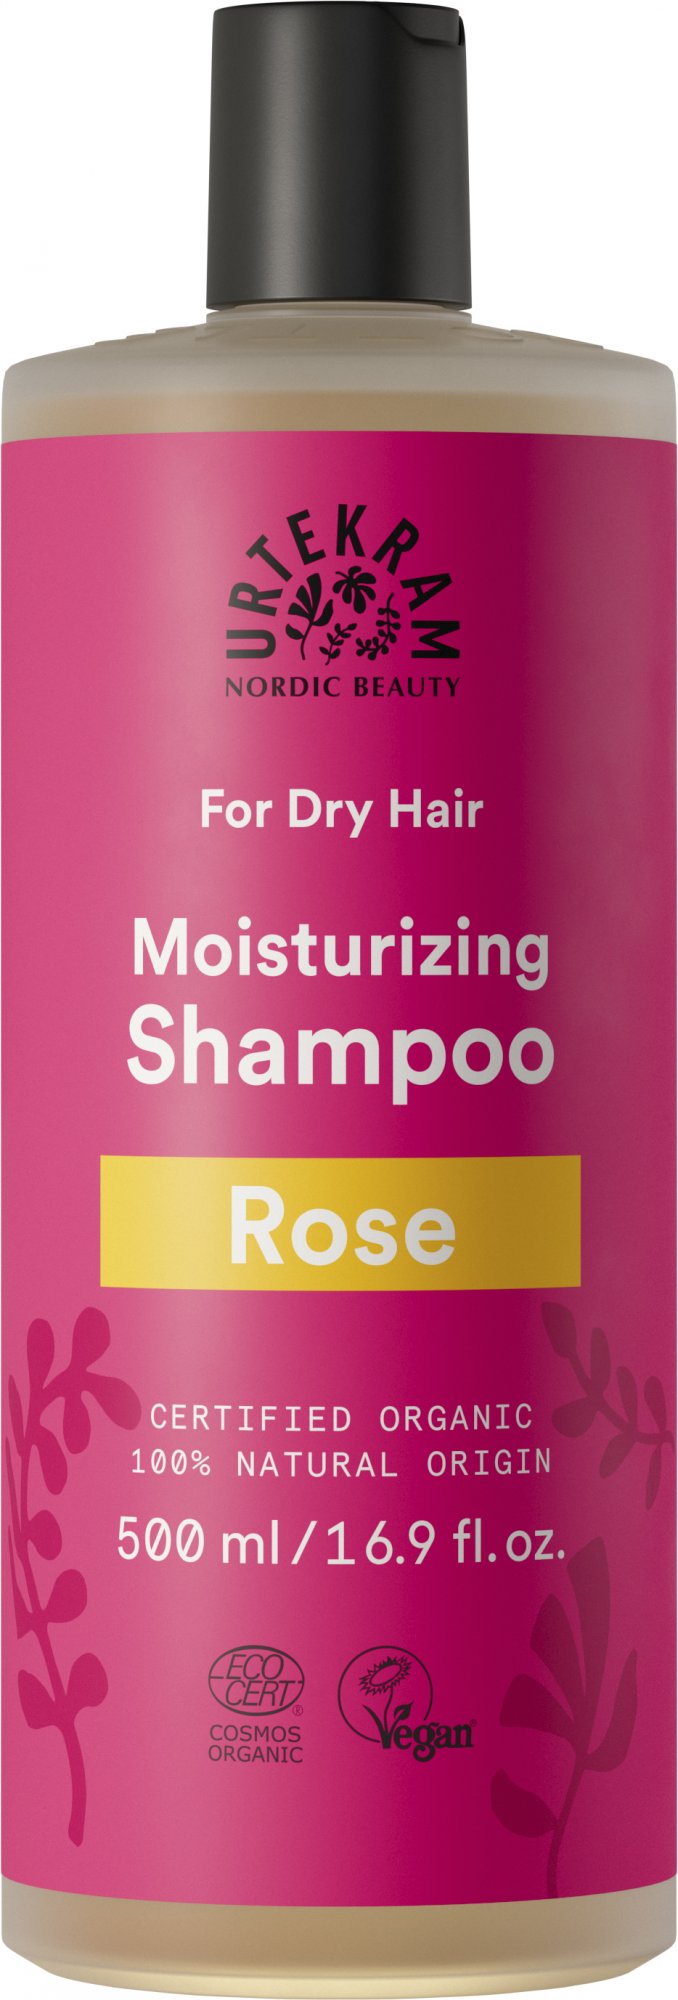 Urtekram Růžový šampon pro suché vlasy BIO 500 ml - krásně hydratuje Urtekram